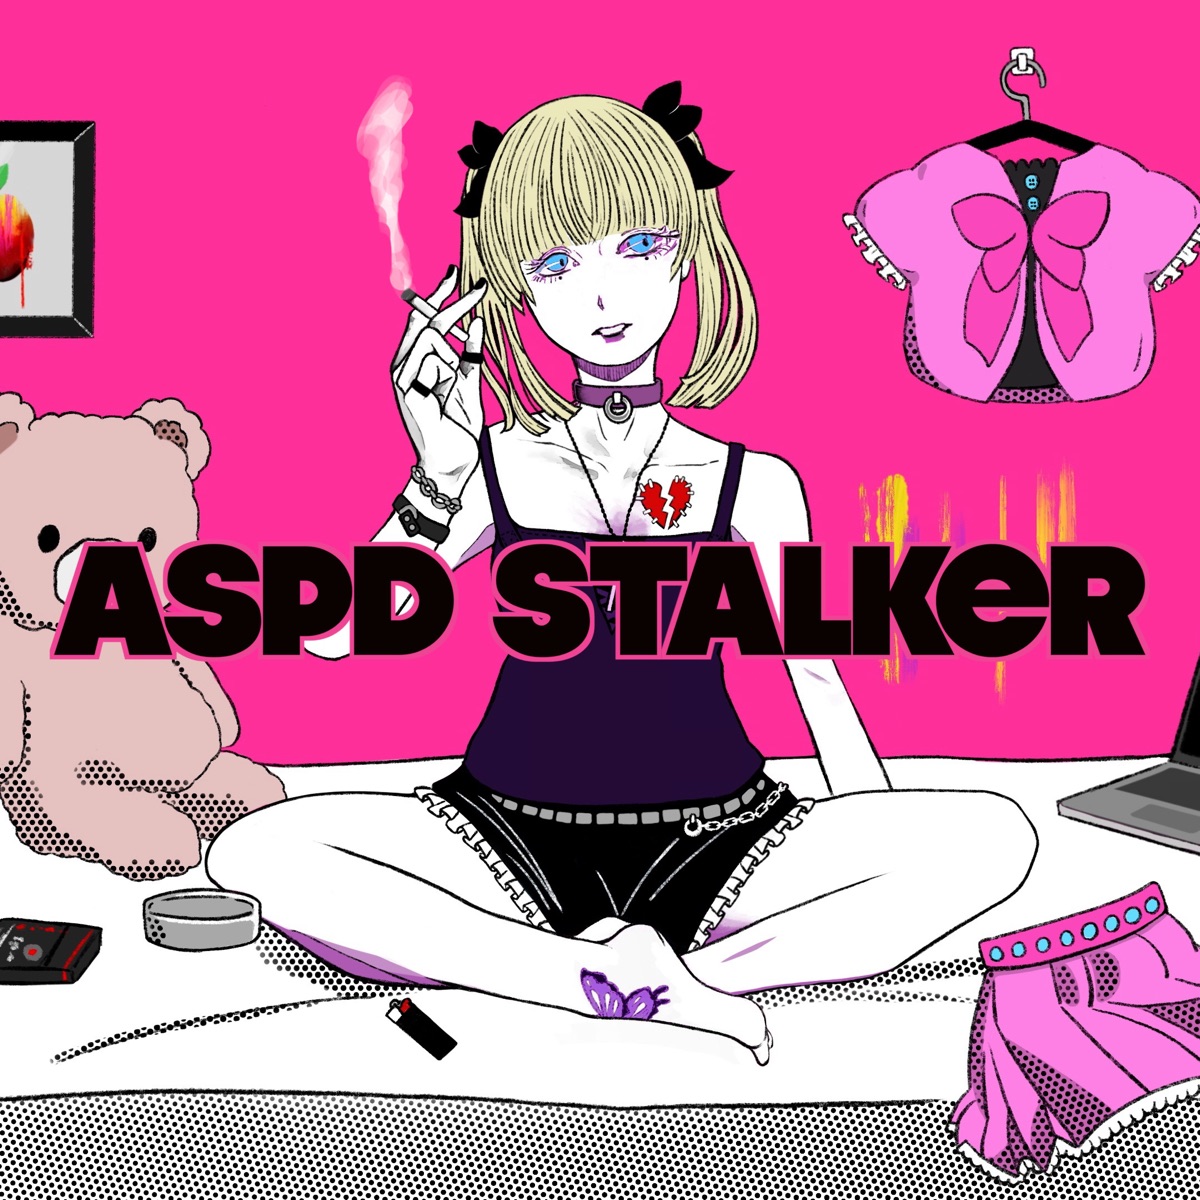 Cover for『Unknöwn Kun - ASPD Stalker』from the release『ASPD Stalker』